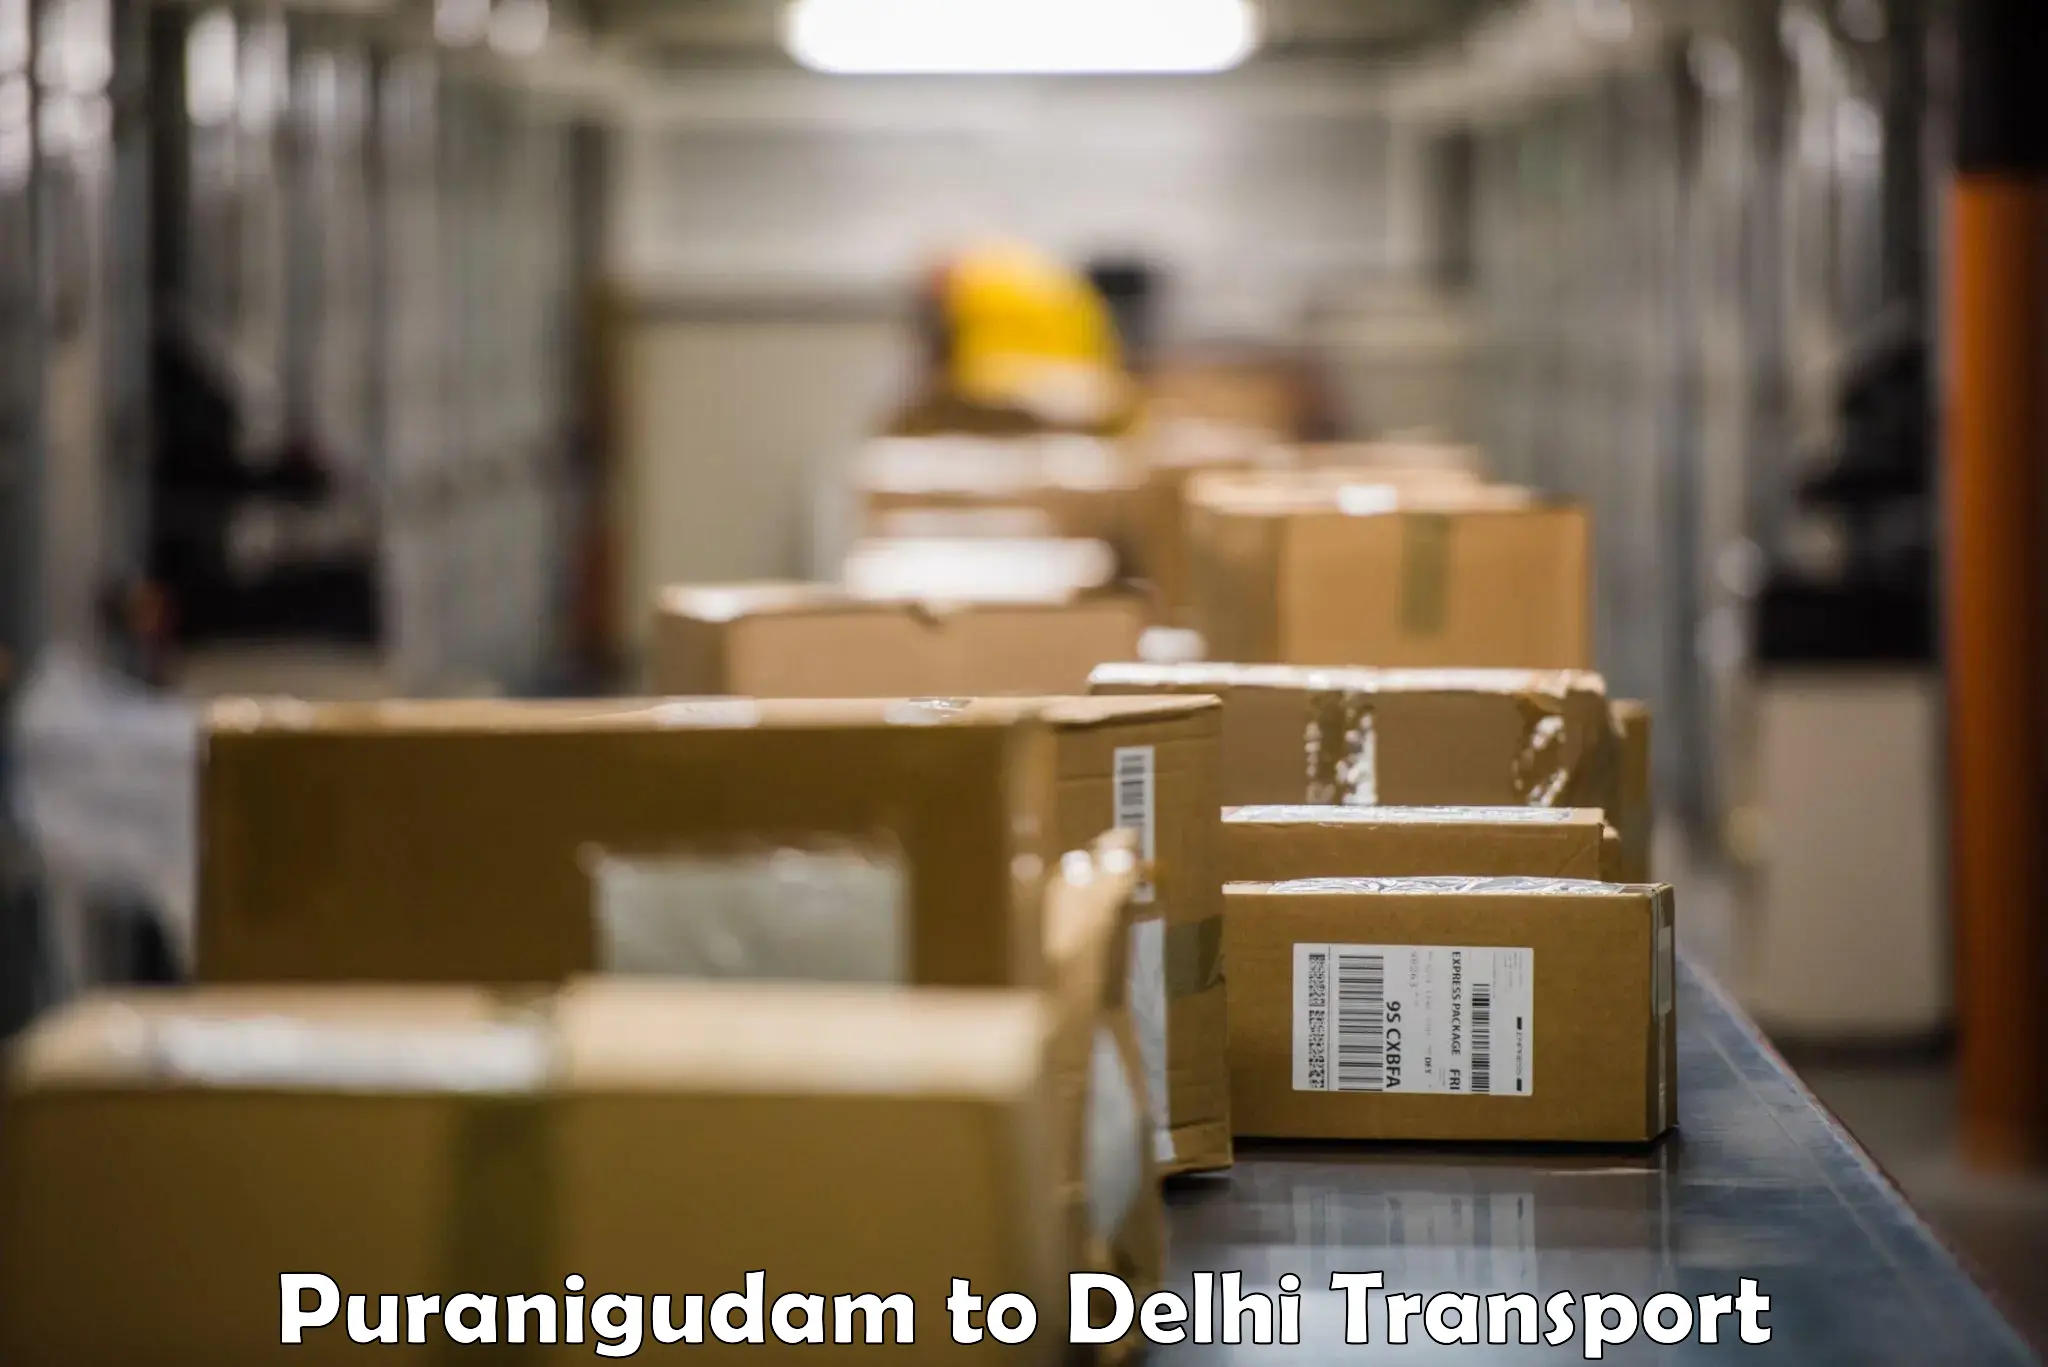 Road transport online services Puranigudam to NIT Delhi